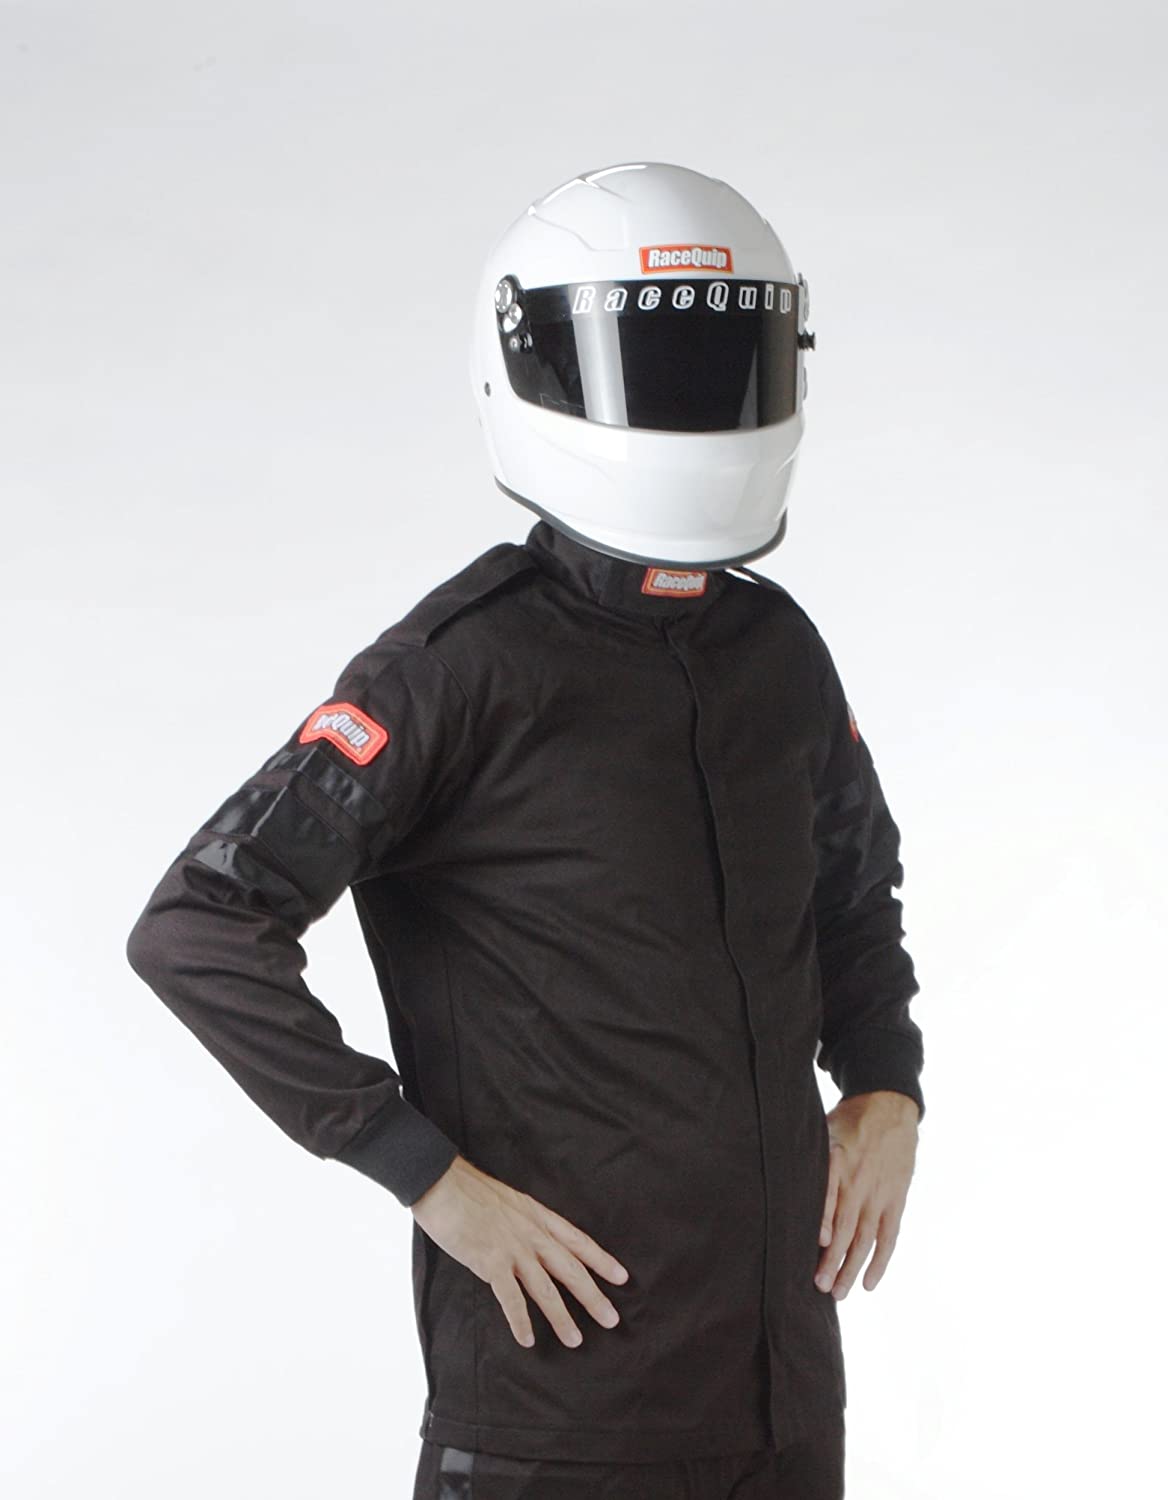 111002 RaceQuip Racing Apparel Jacket - eliteracefab.com